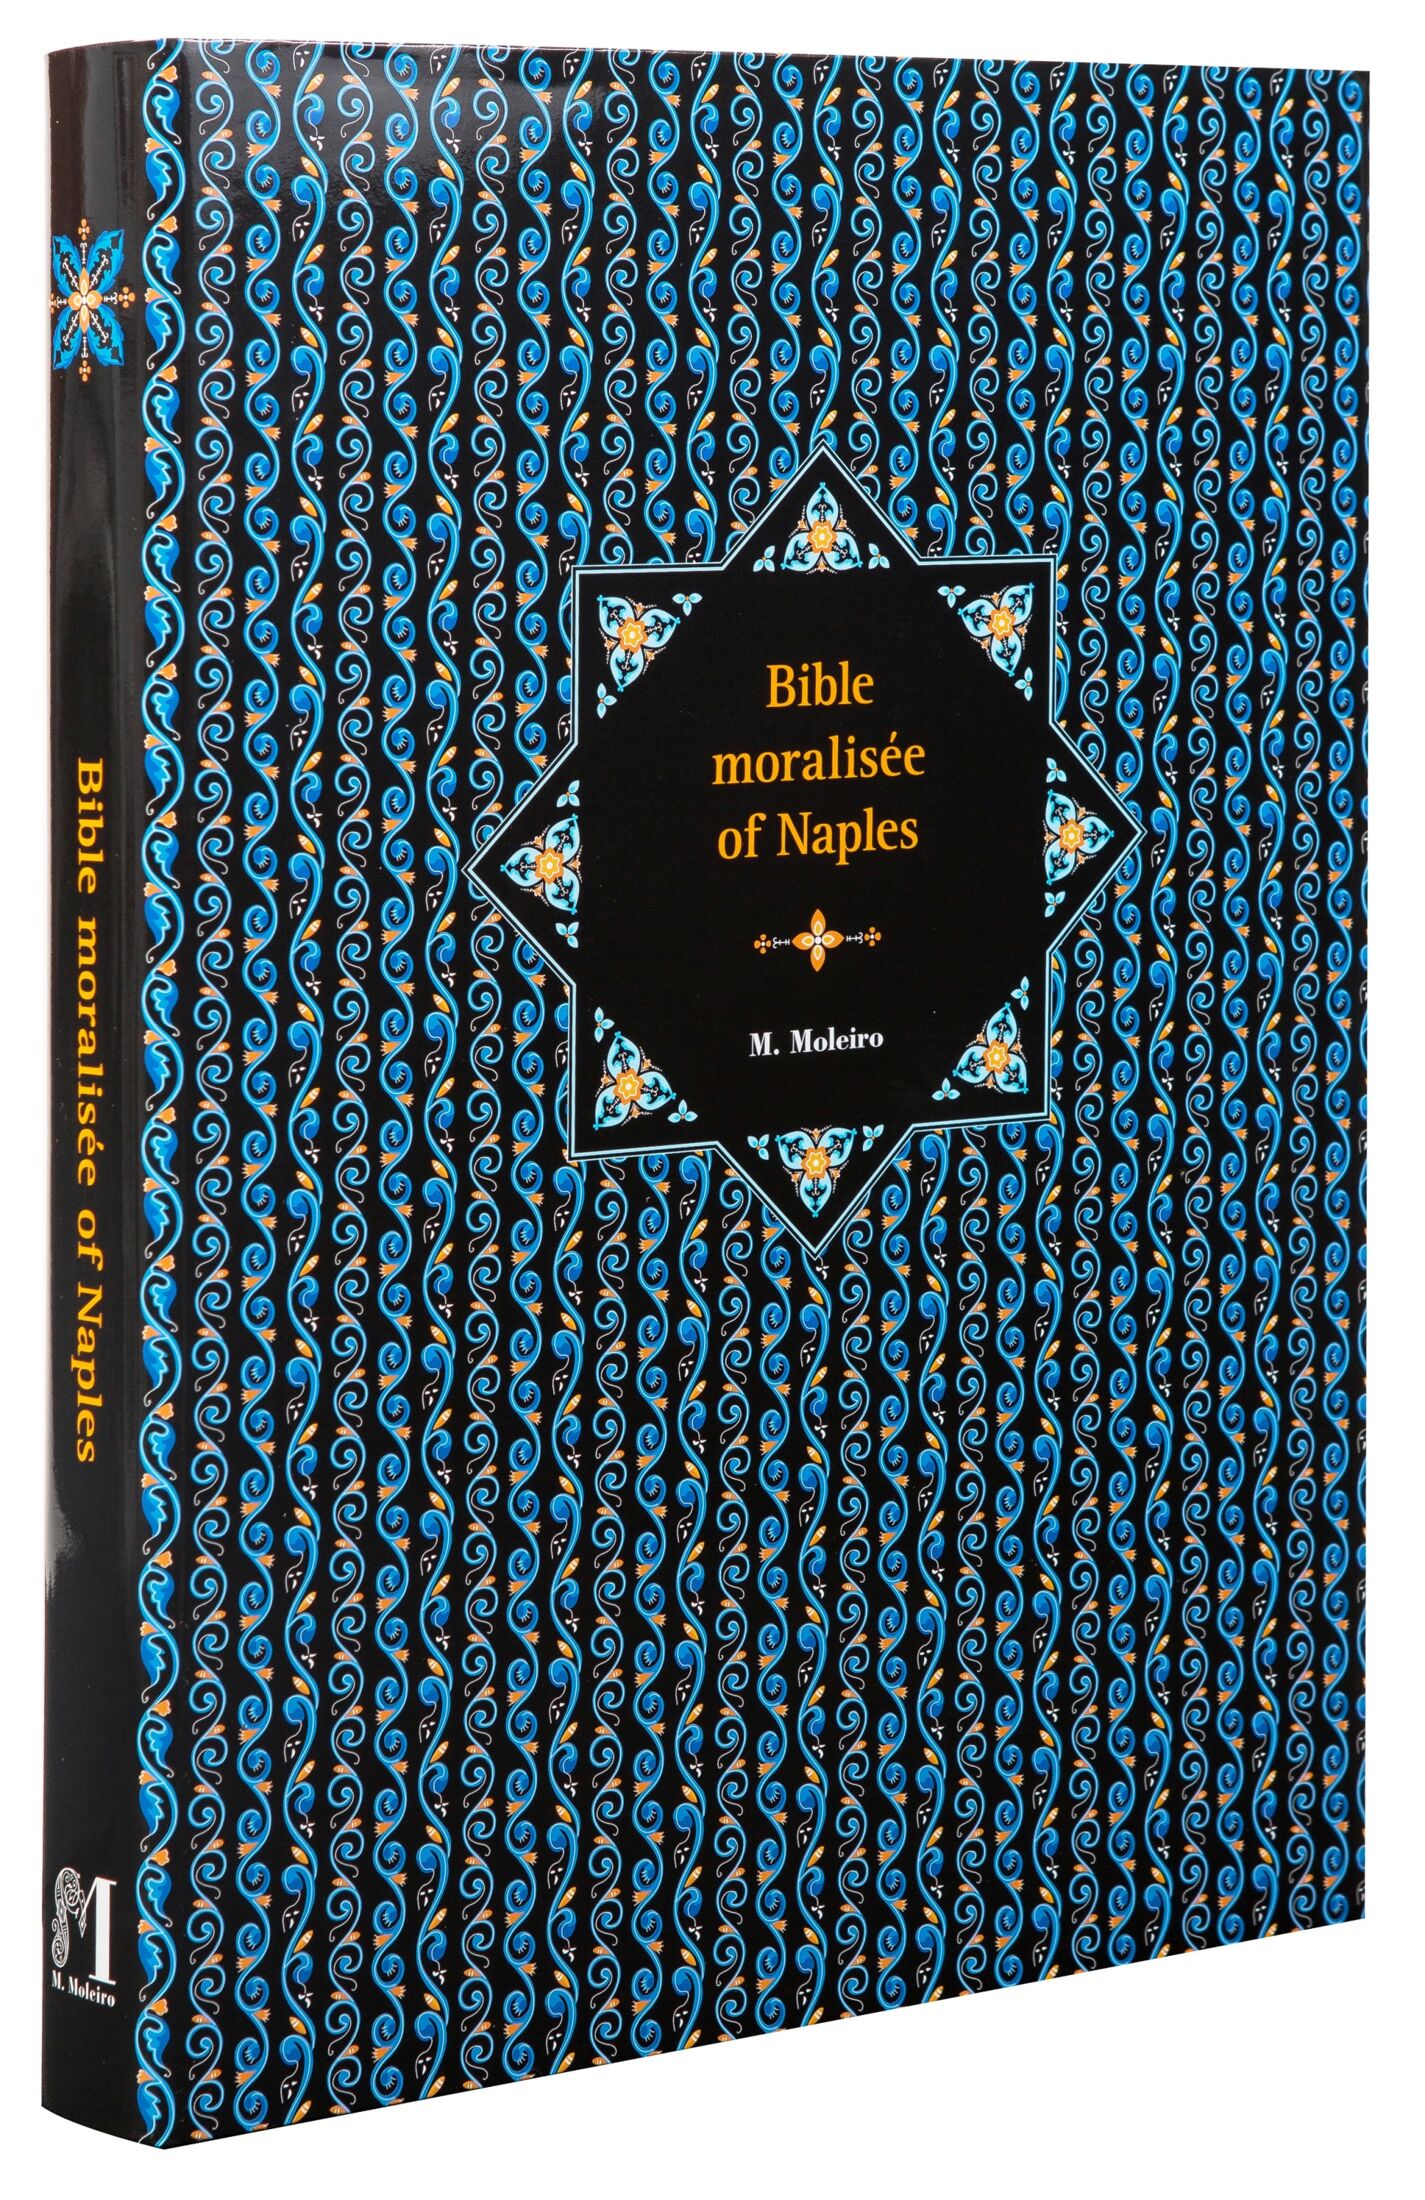 Imagen de la portada y lomo de la Biblia Moralizada de Nápoles en formato libro de arte.